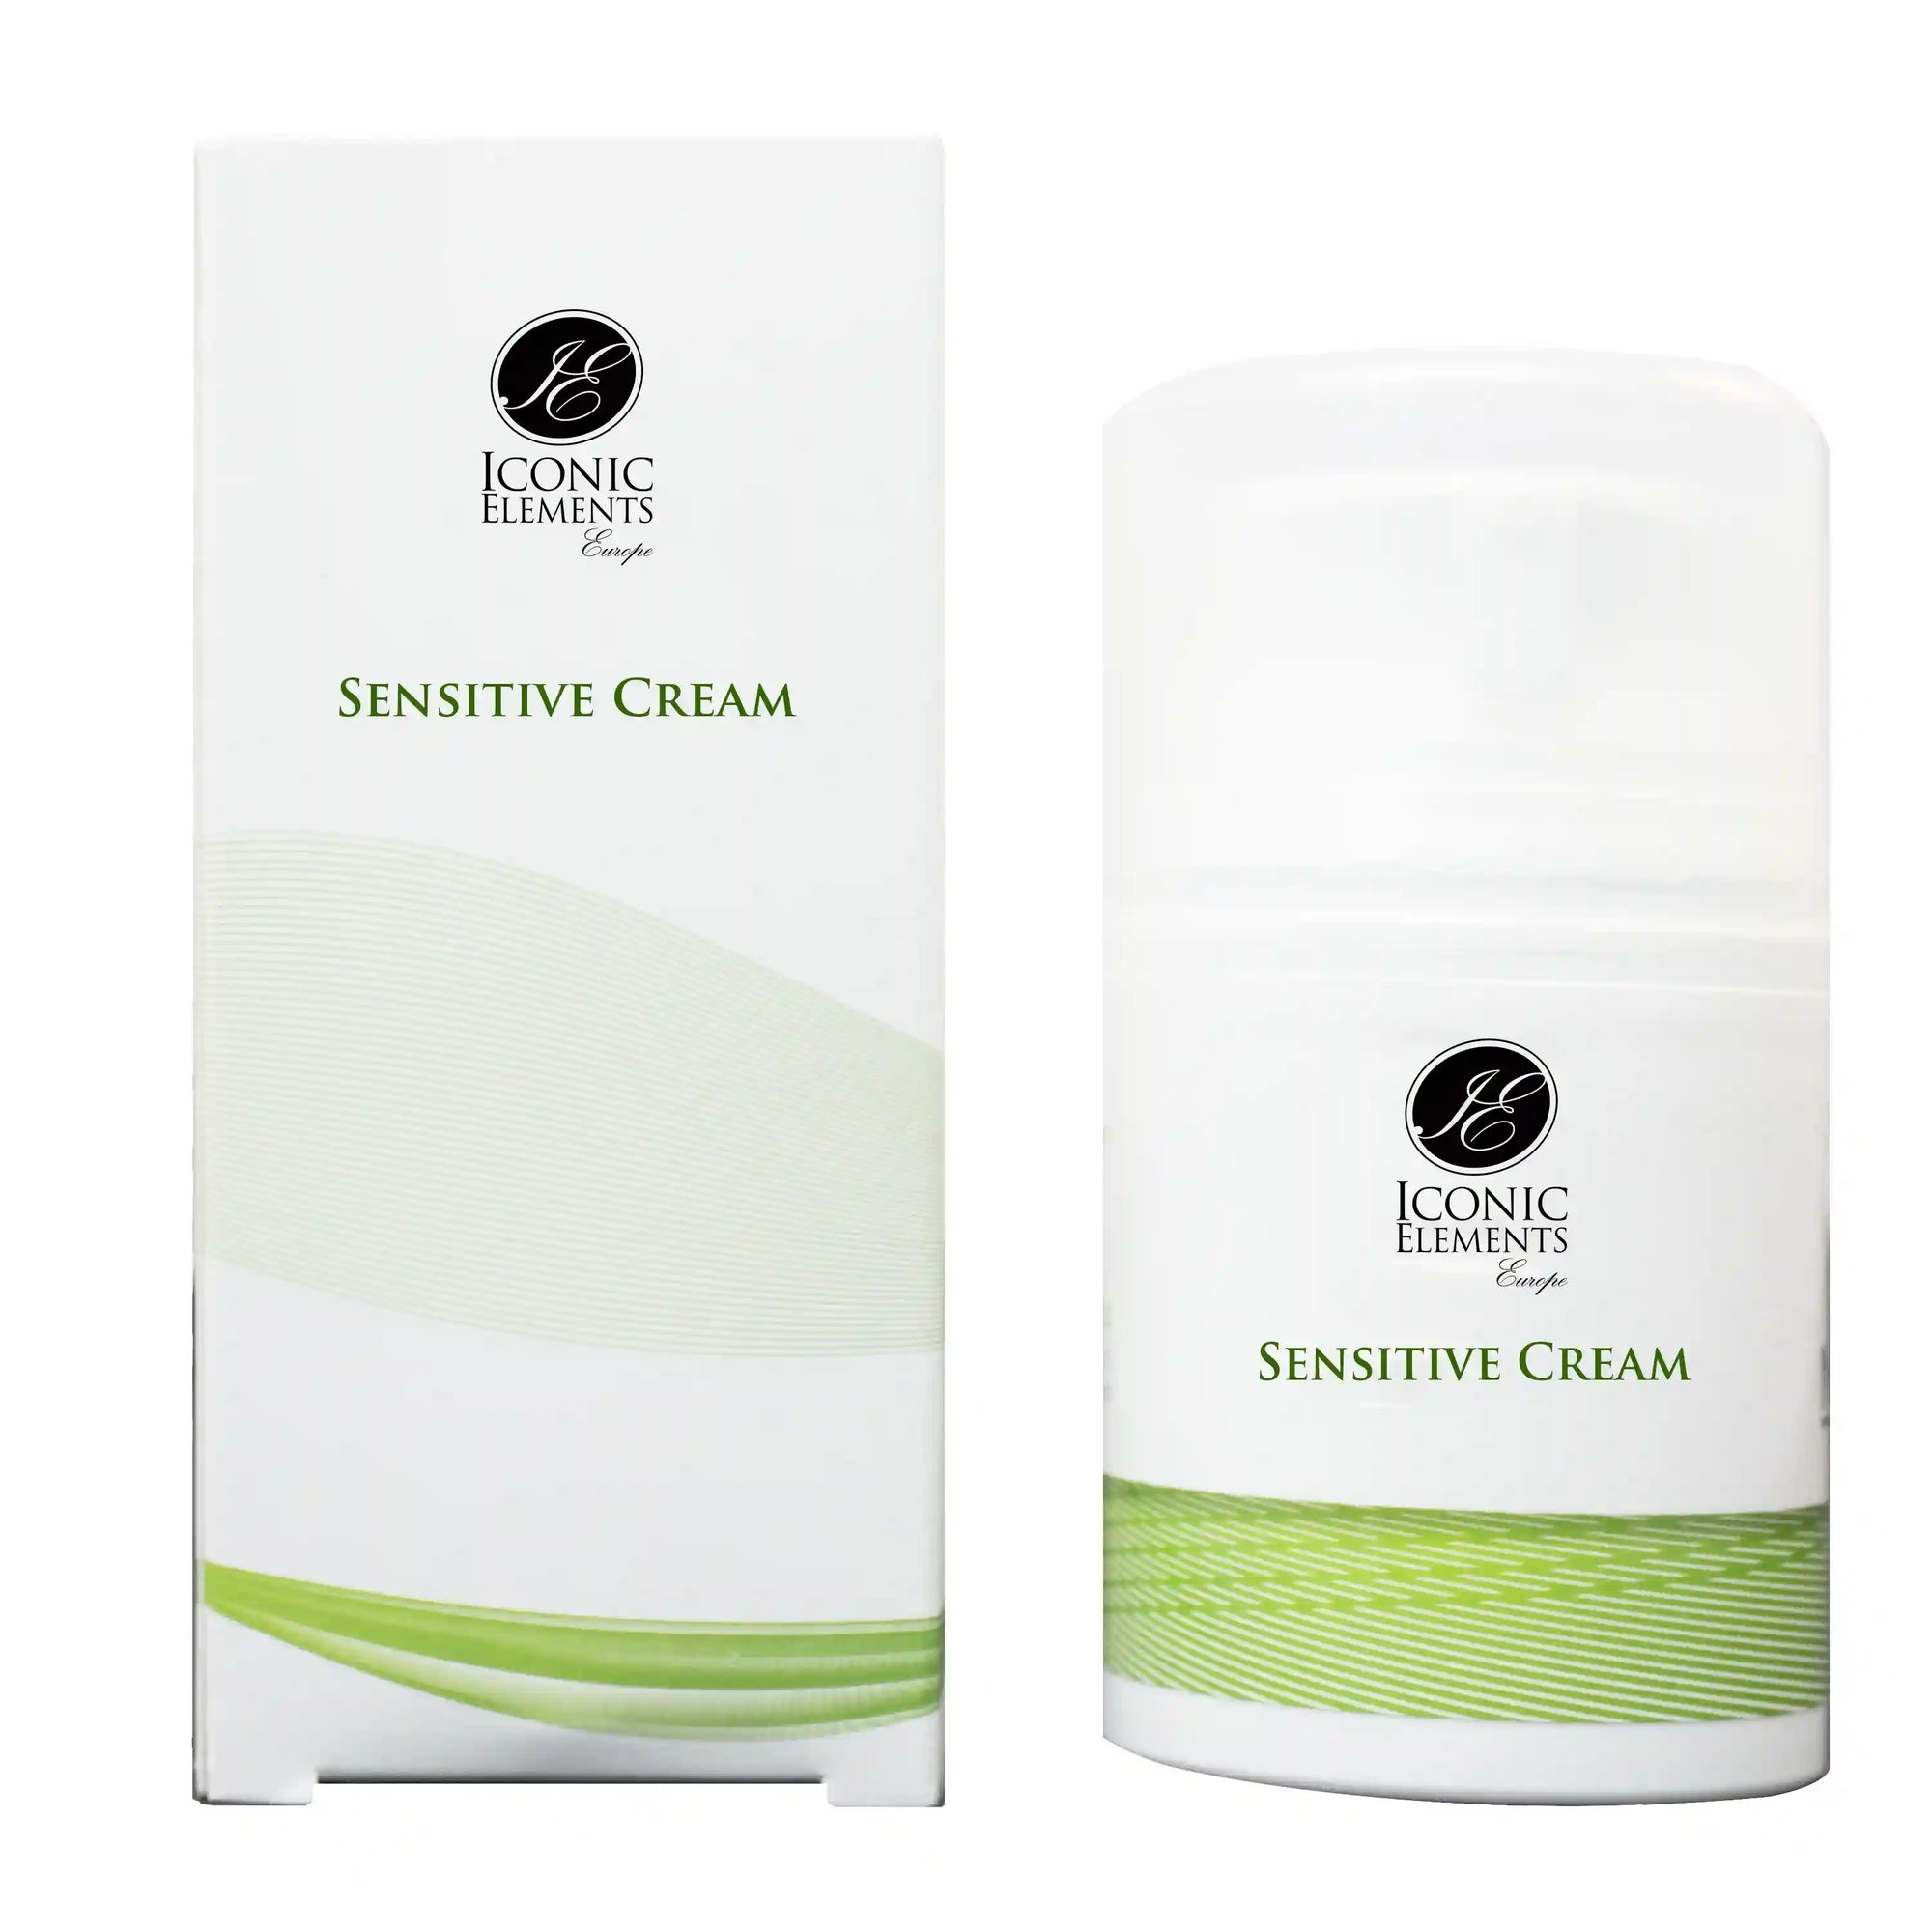 Ervaar de kalmerende verzorging van de Iconic Elements Sensitive Cream, speciaal ontwikkeld voor de gevoelige huid. Deze zachte en hydraterende crème biedt verlichting voor een geïrriteerde en rode huid.